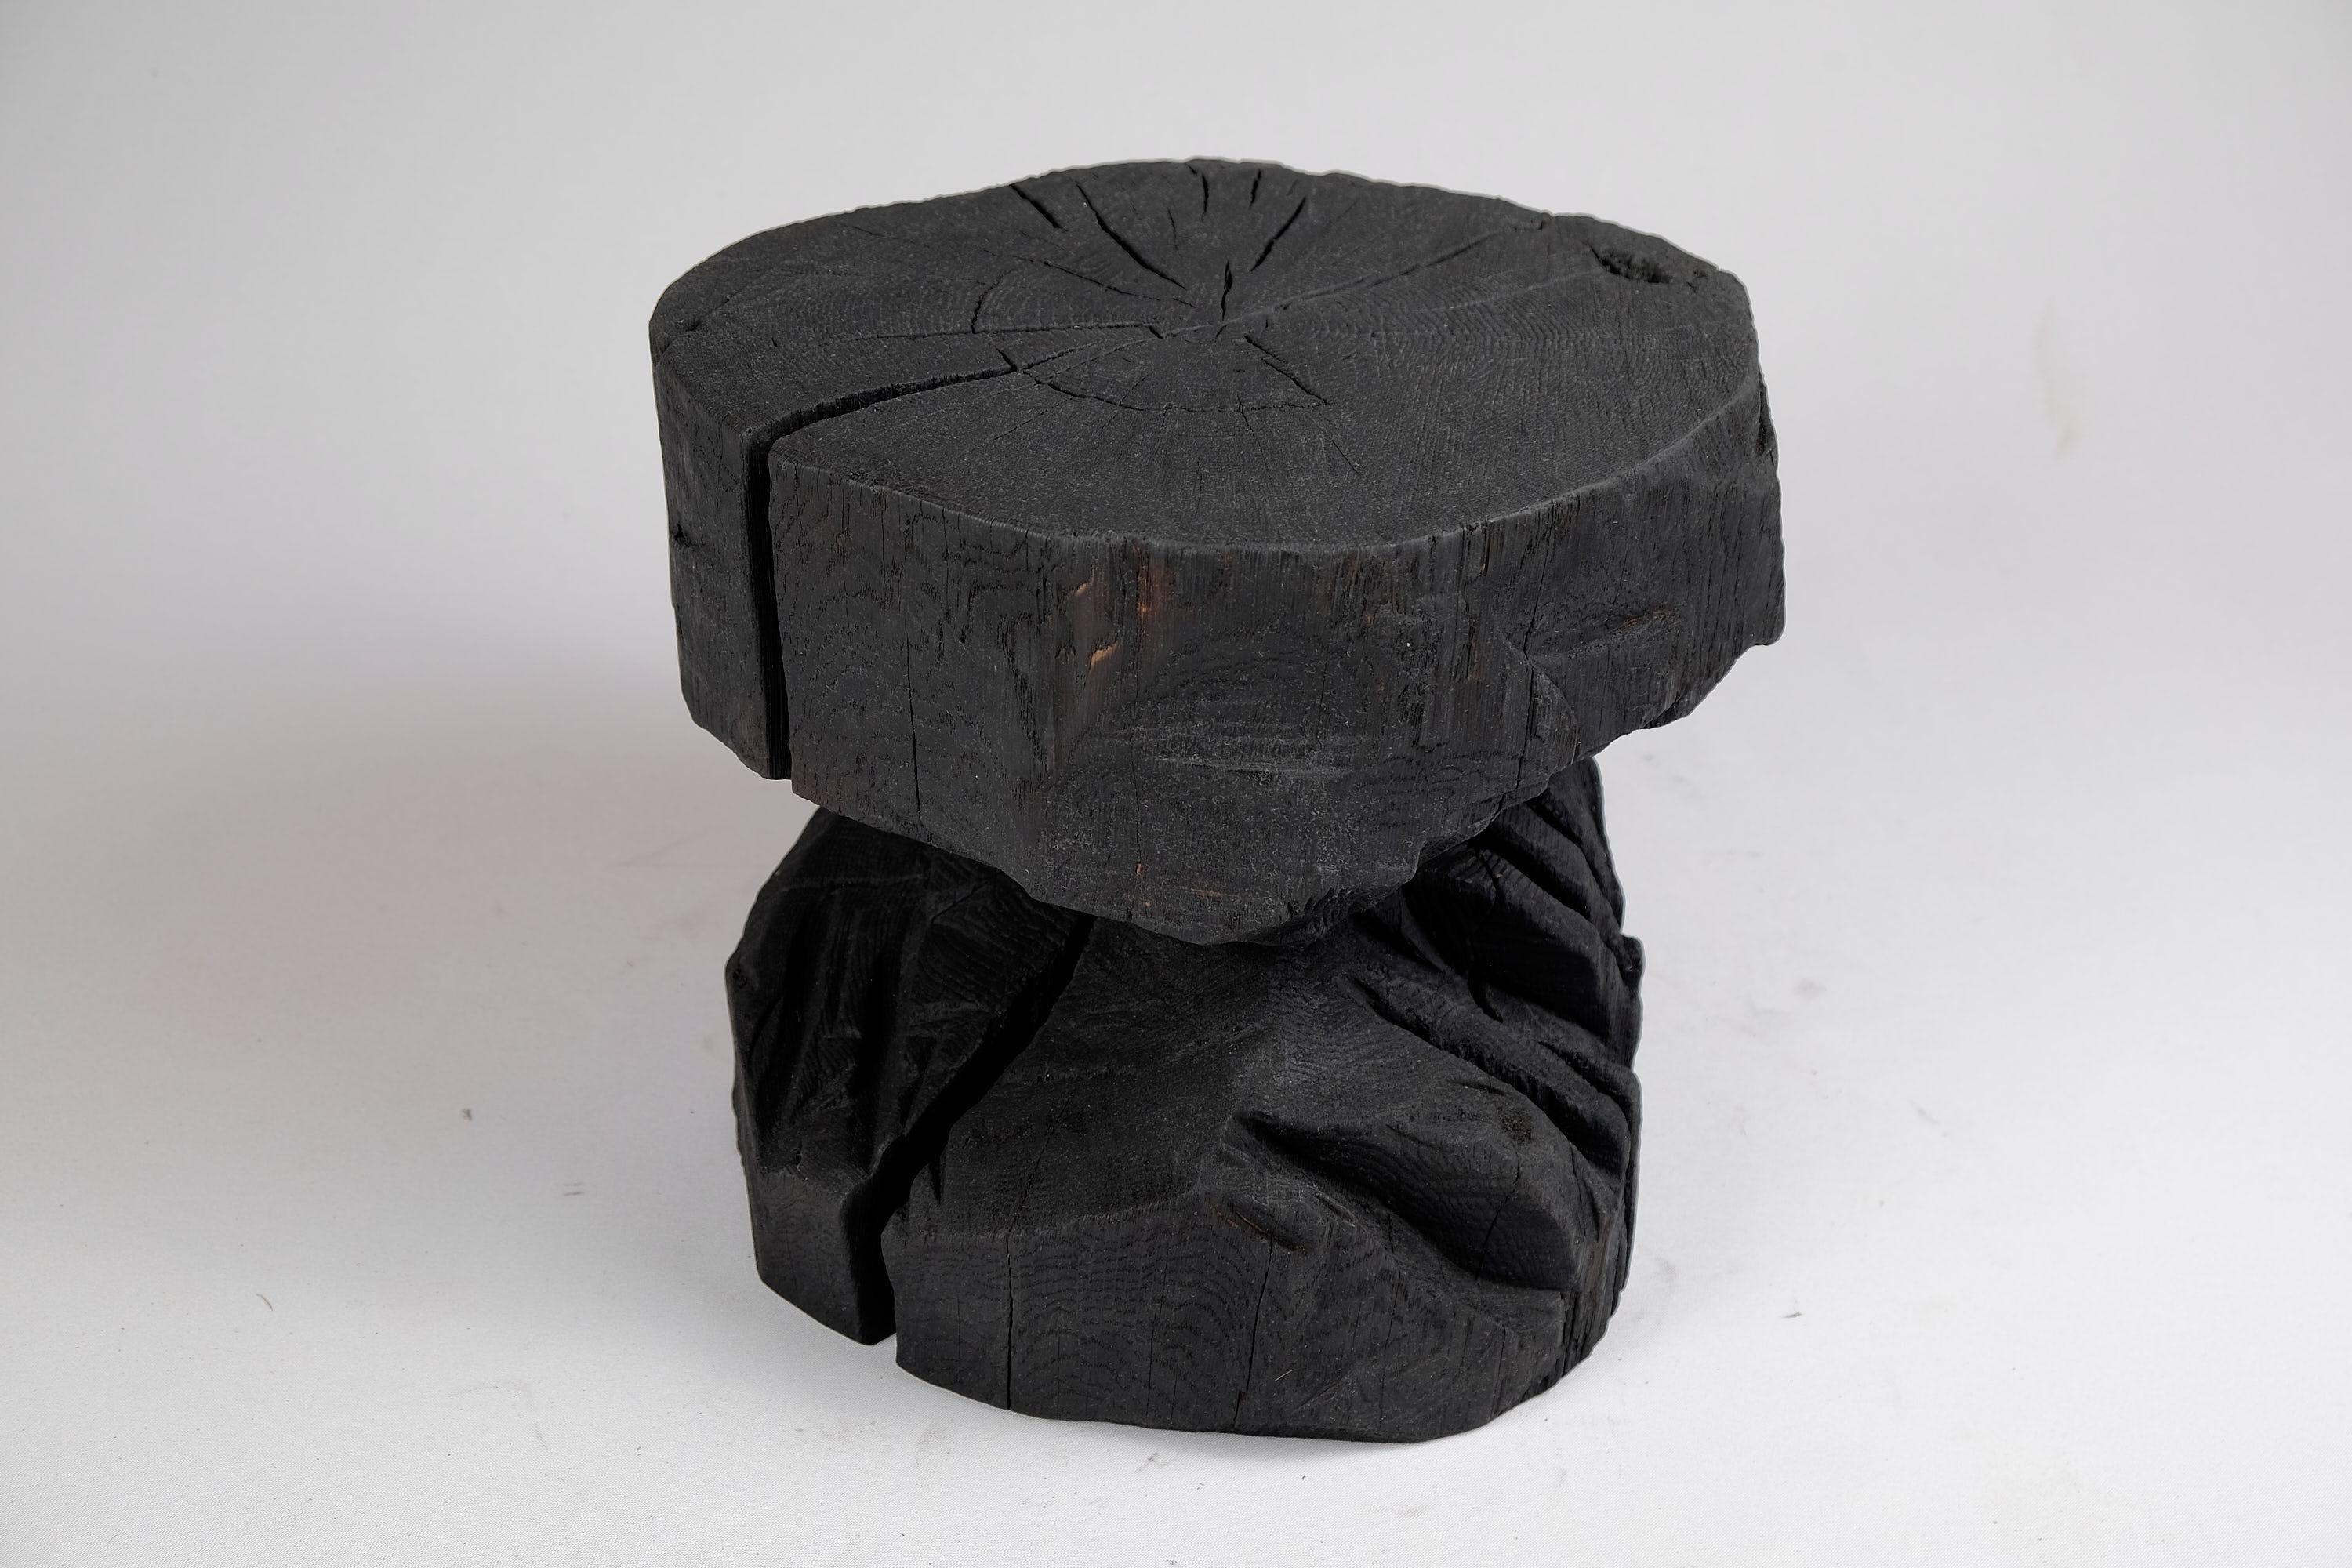 Solid Burnt Wood, Sculptural Stool/Side Table, Rock, Original Design, Logniture For Sale 3